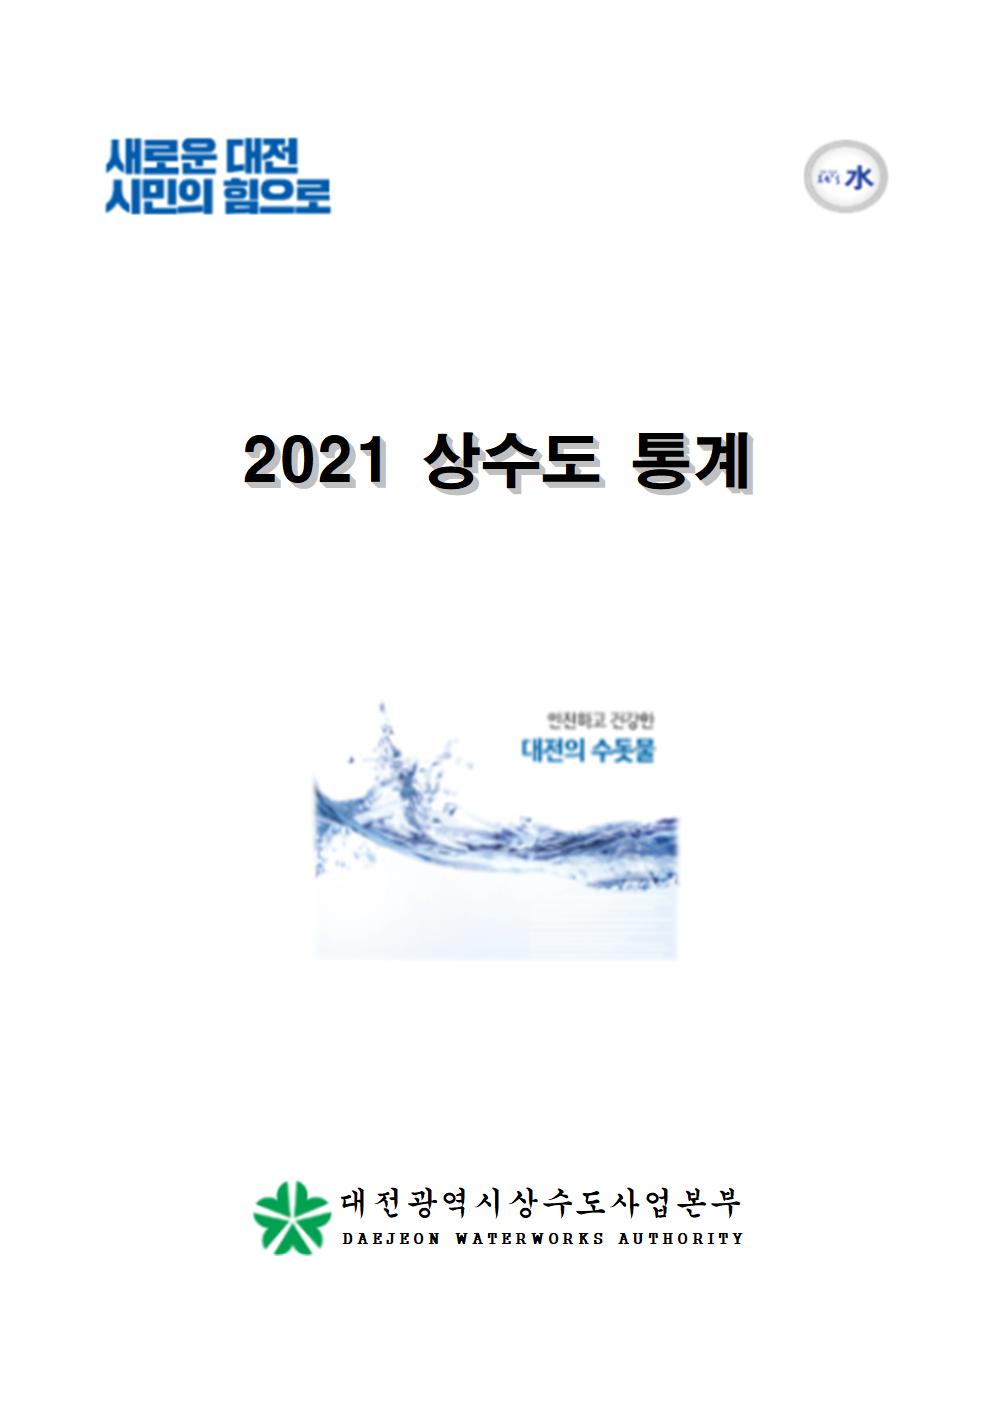 2021년 상수도통계(한글)_첫페이지001.jpg